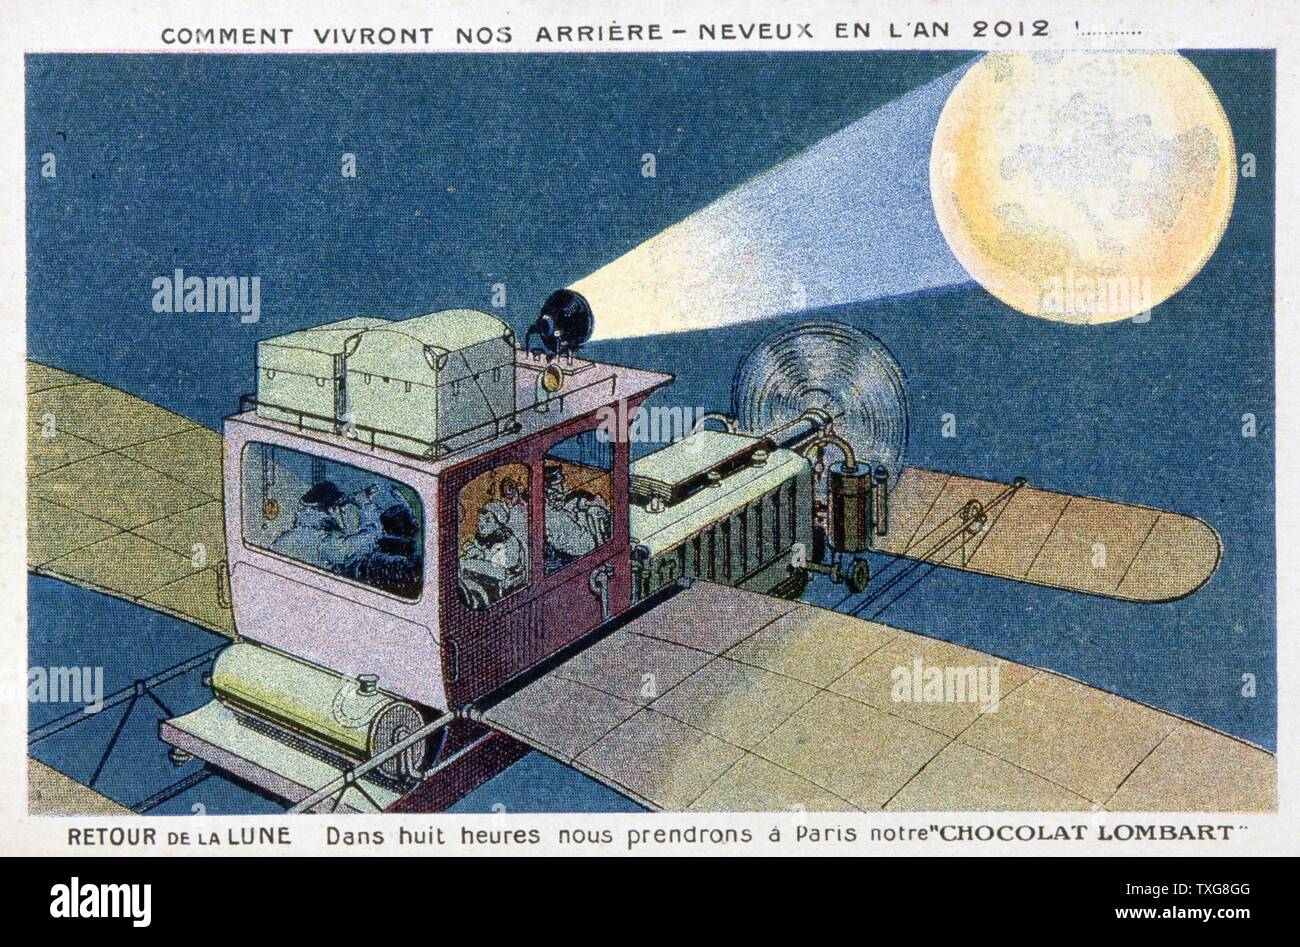 Carte du commerce de voyage à la mode d'imaginer en 2012. Retour à la Lune dans un biplan privé. En huit heures, il a été possible d'aller à Paris et acheter 'chocolat' Lombard Banque D'Images